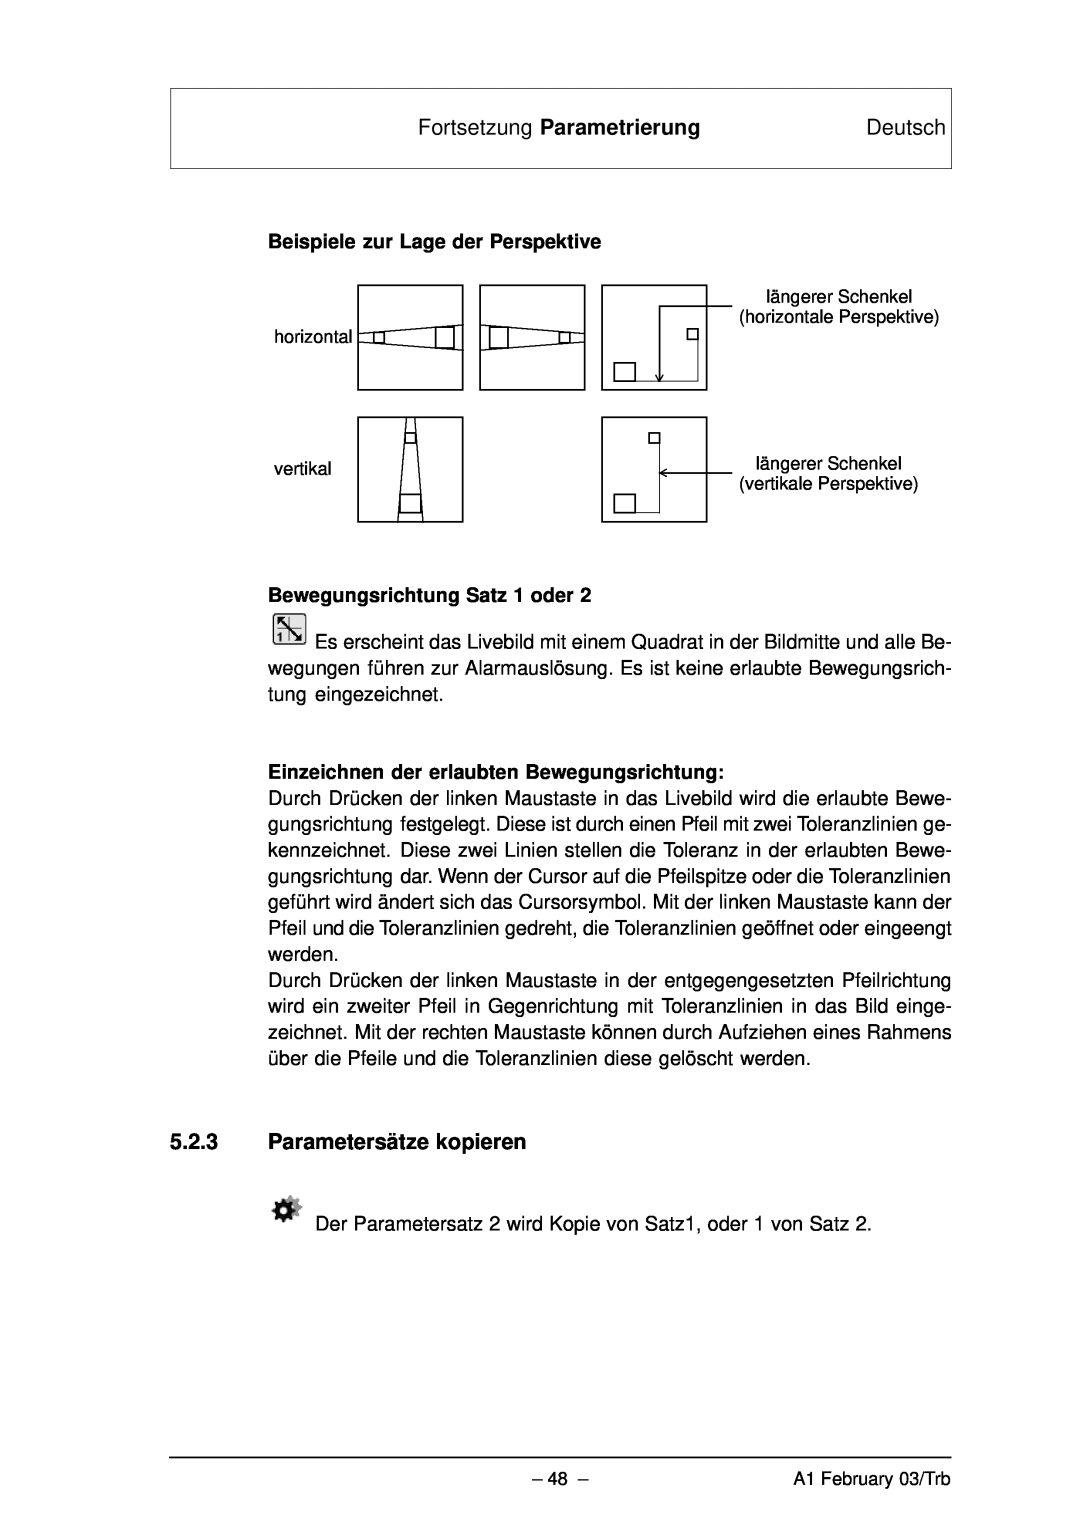 Bosch Appliances VMD01 M60 NTSC, VMD01 M50 PAL manual Fortsetzung Parametrierung, Deutsch, 5.2.3Parametersätze kopieren 